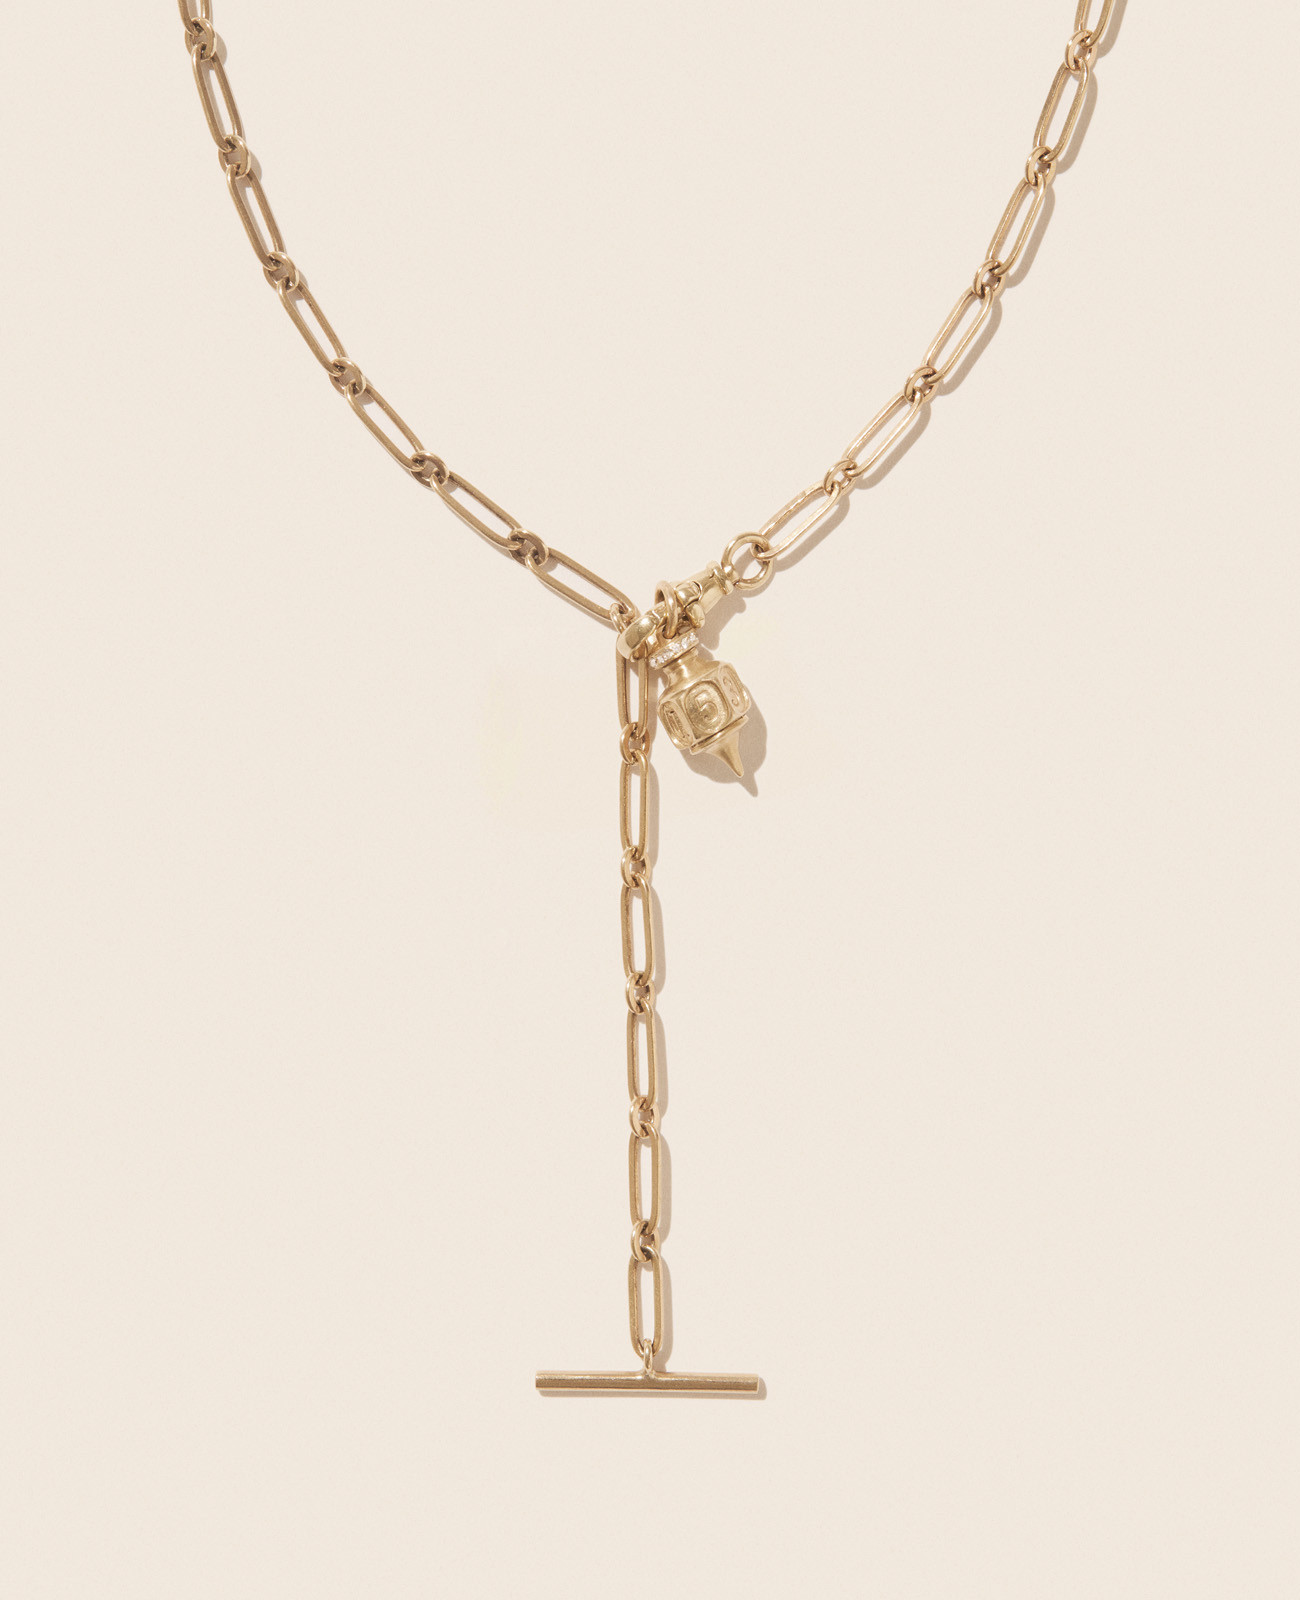 DEBBIE N°2 necklace pascale monvoisin jewelry paris